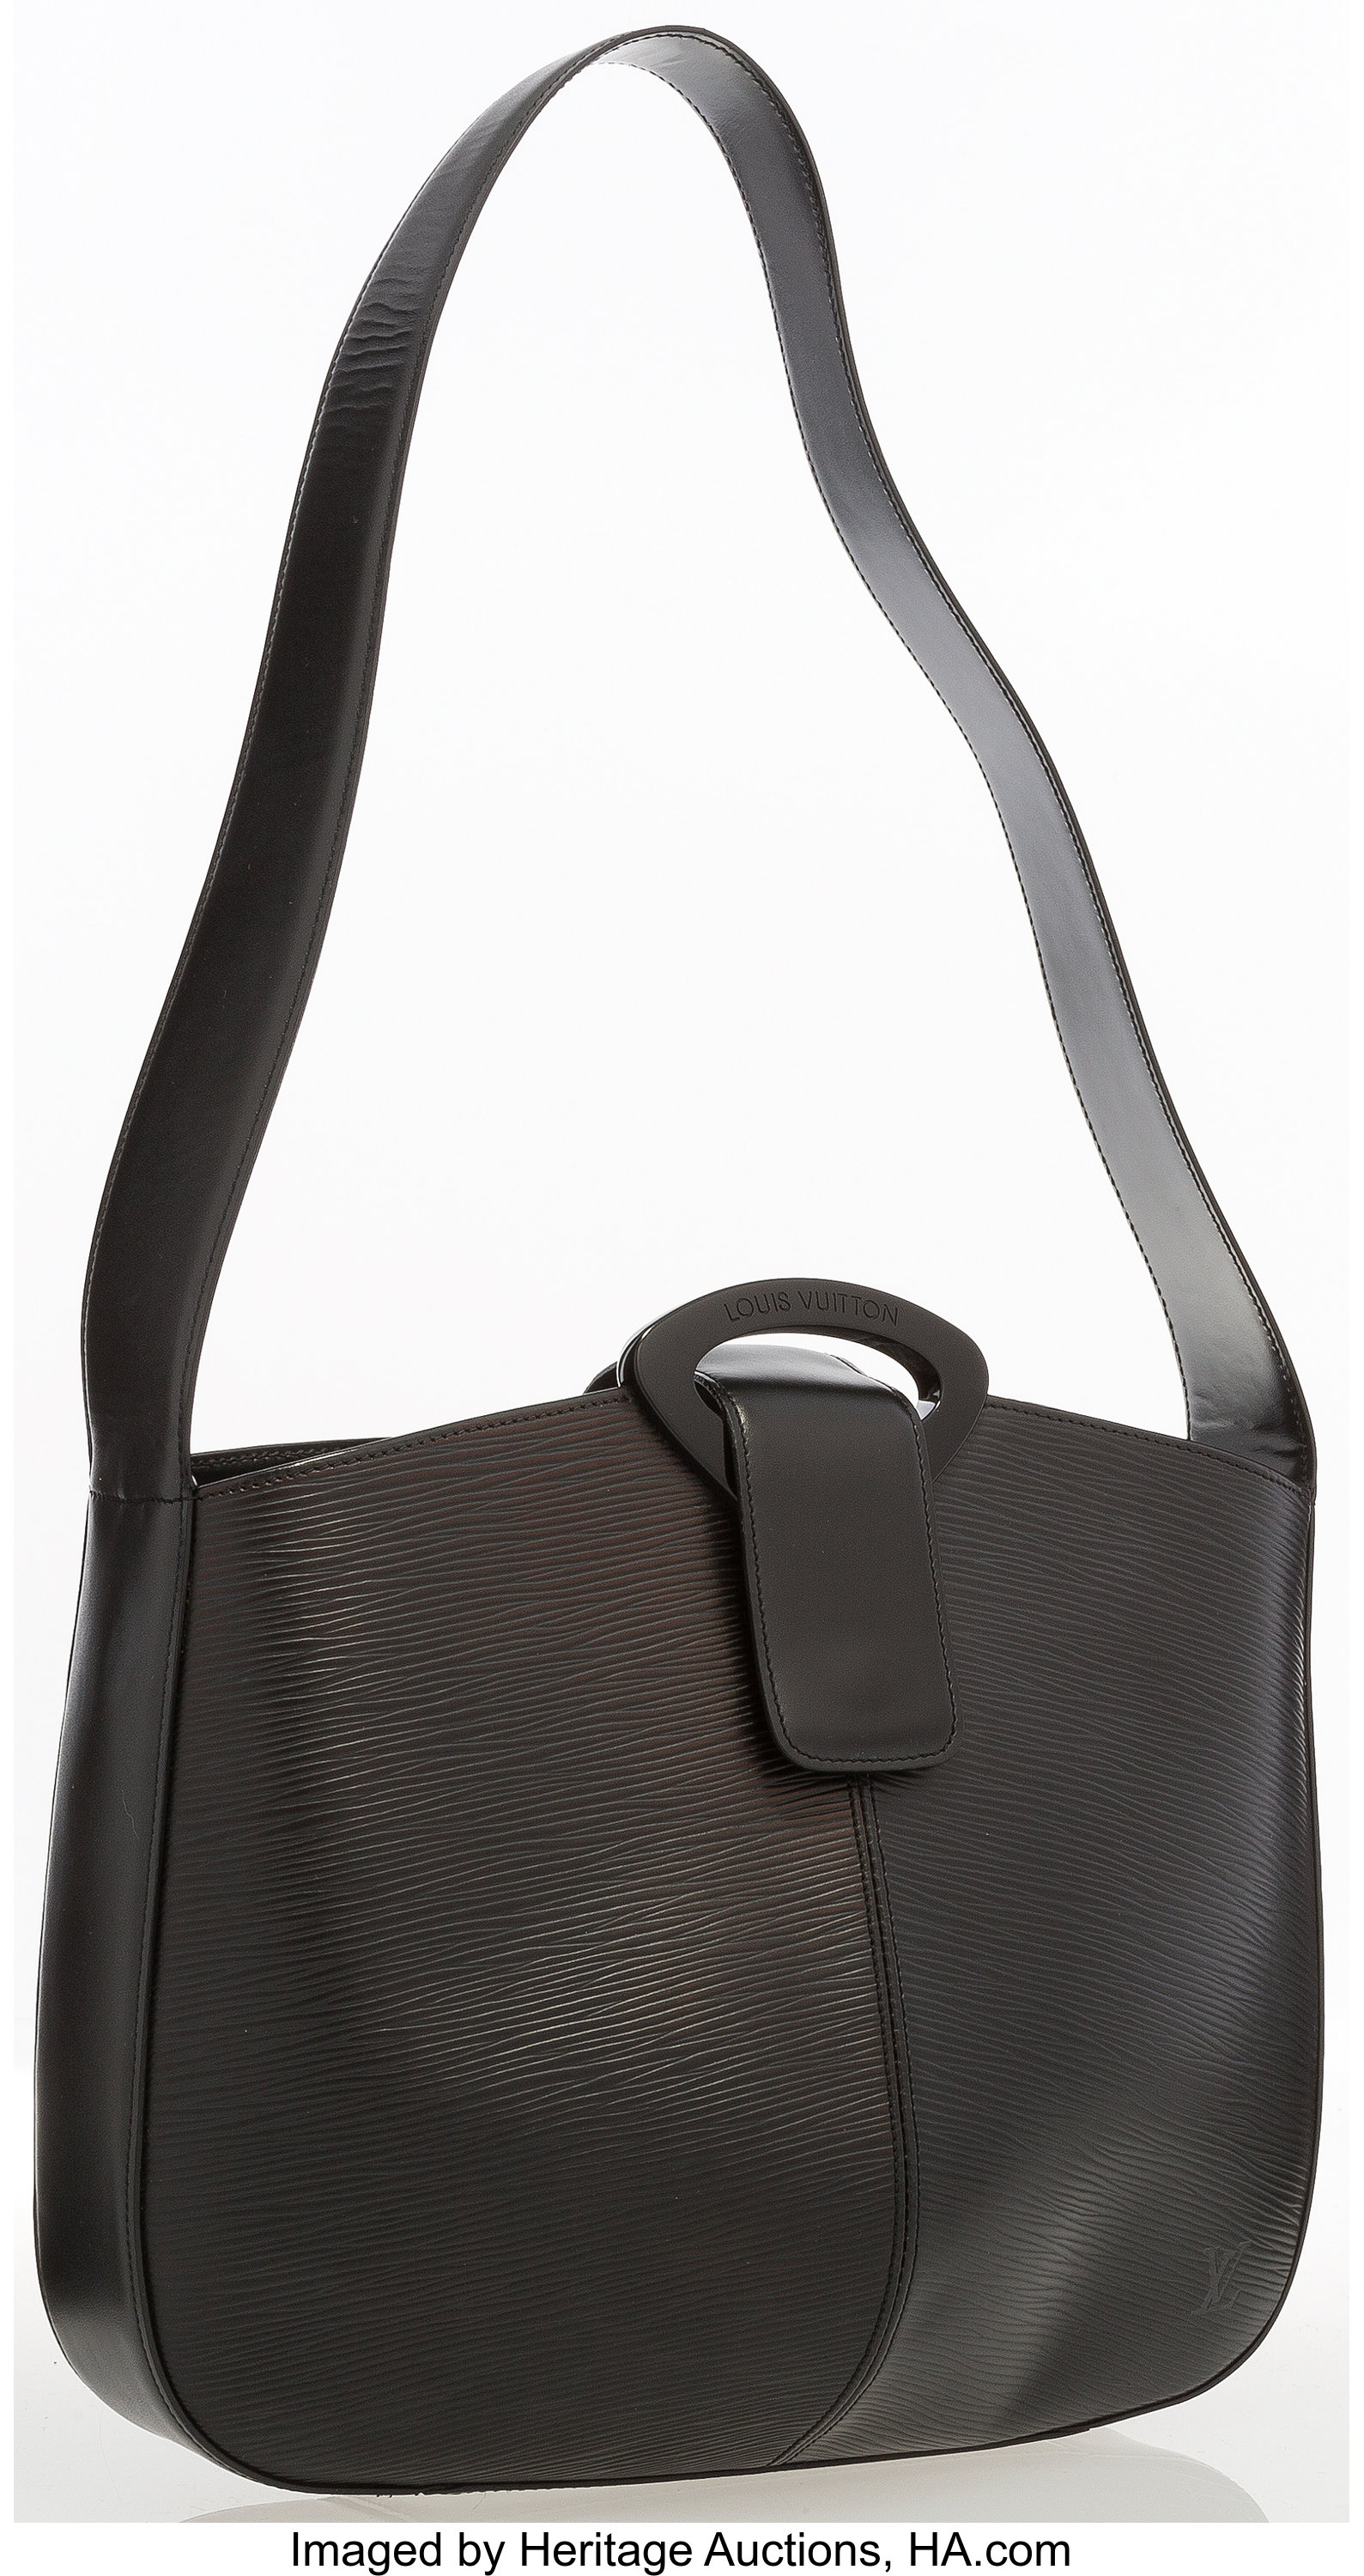 Sold at Auction: Louis Vuitton, LOUIS VUITTON shoulder bag